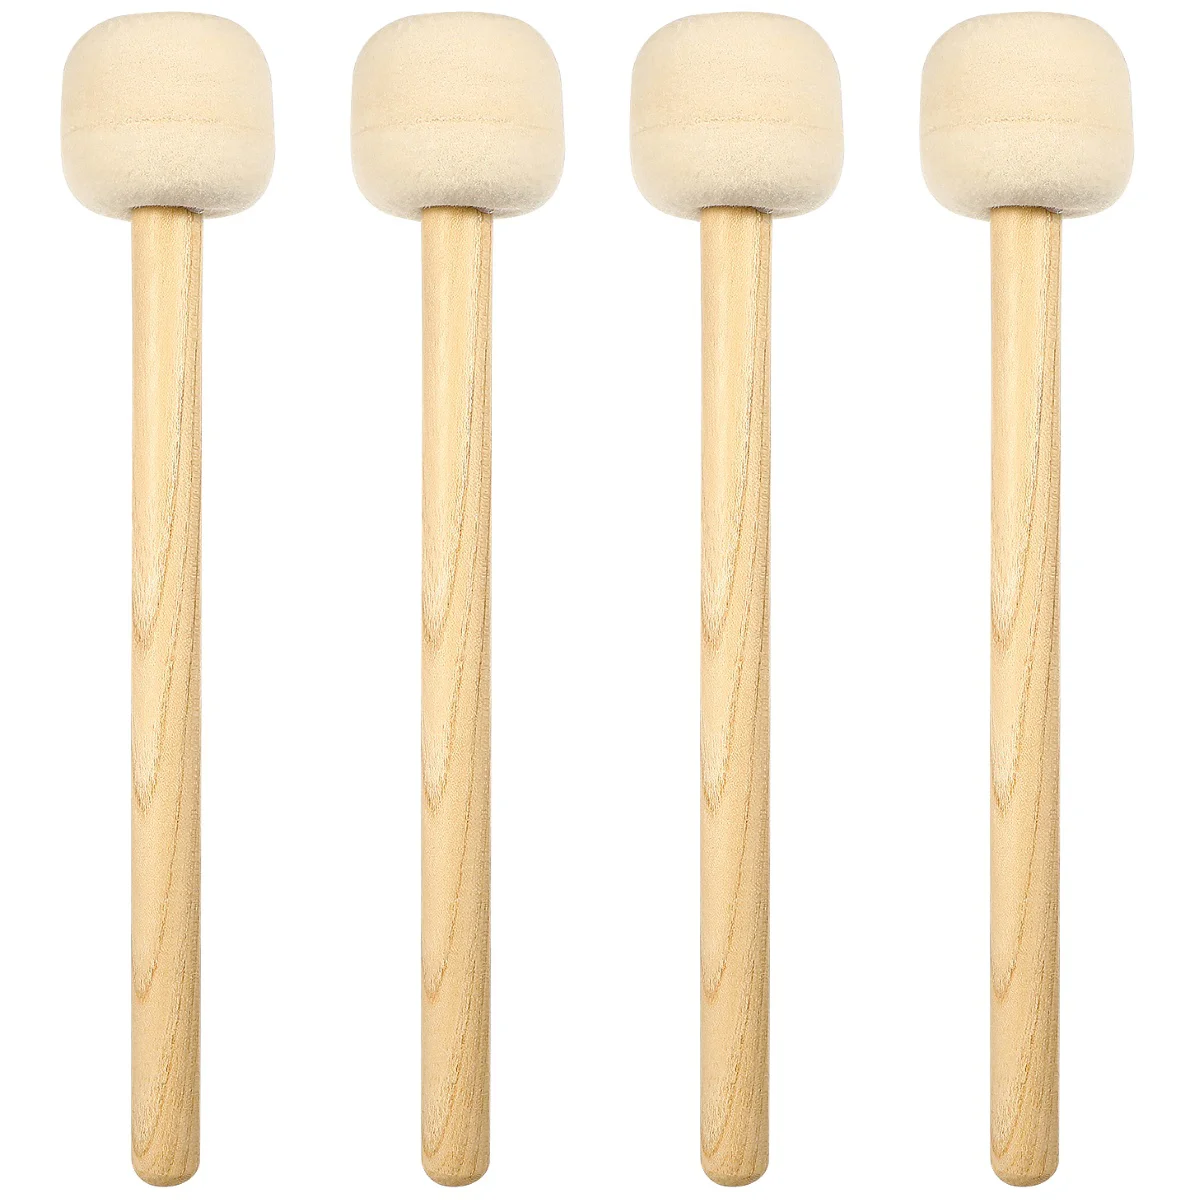 

4 Pcs Wool Felt Drumstick Instrument Accessories Head Mallets Sticks 5a Drumsticks Wooden Bass Pedal